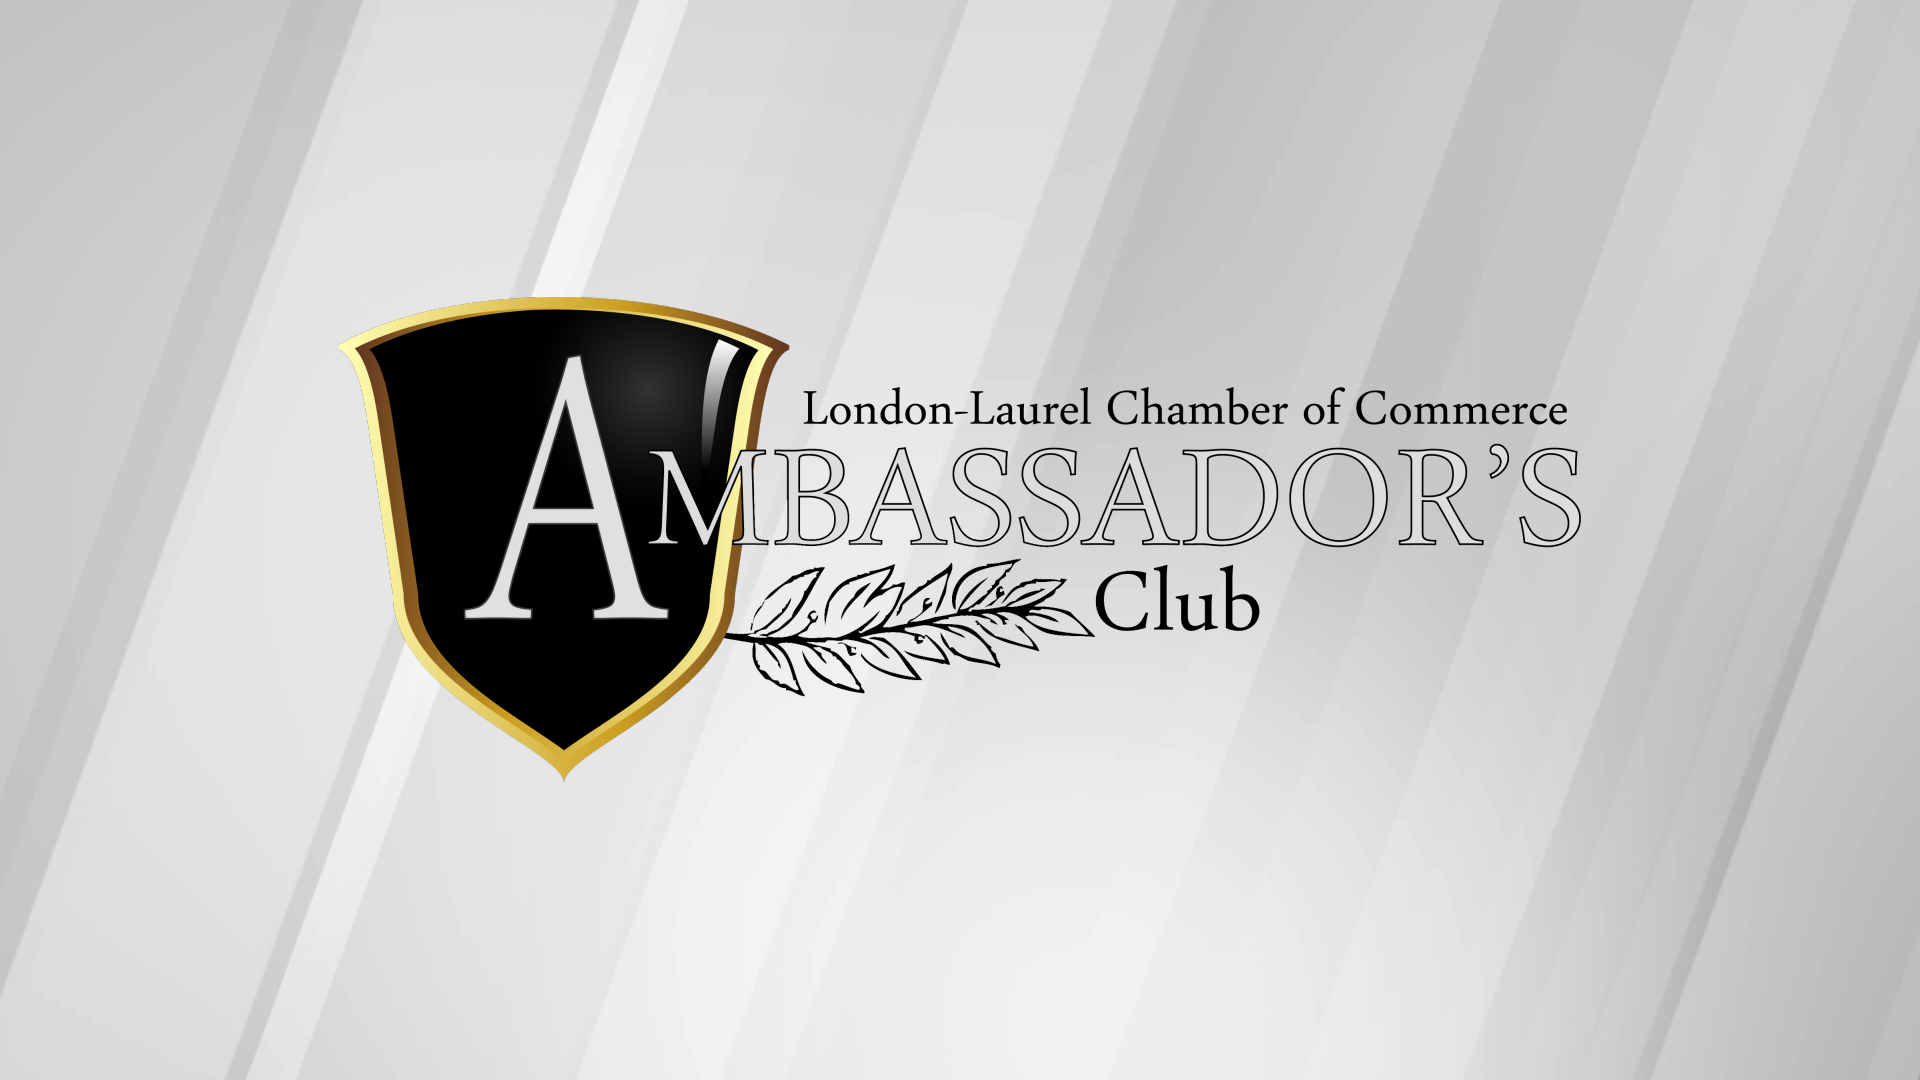 Ambassadors Club London Laurel County Chamber Of Commerce London